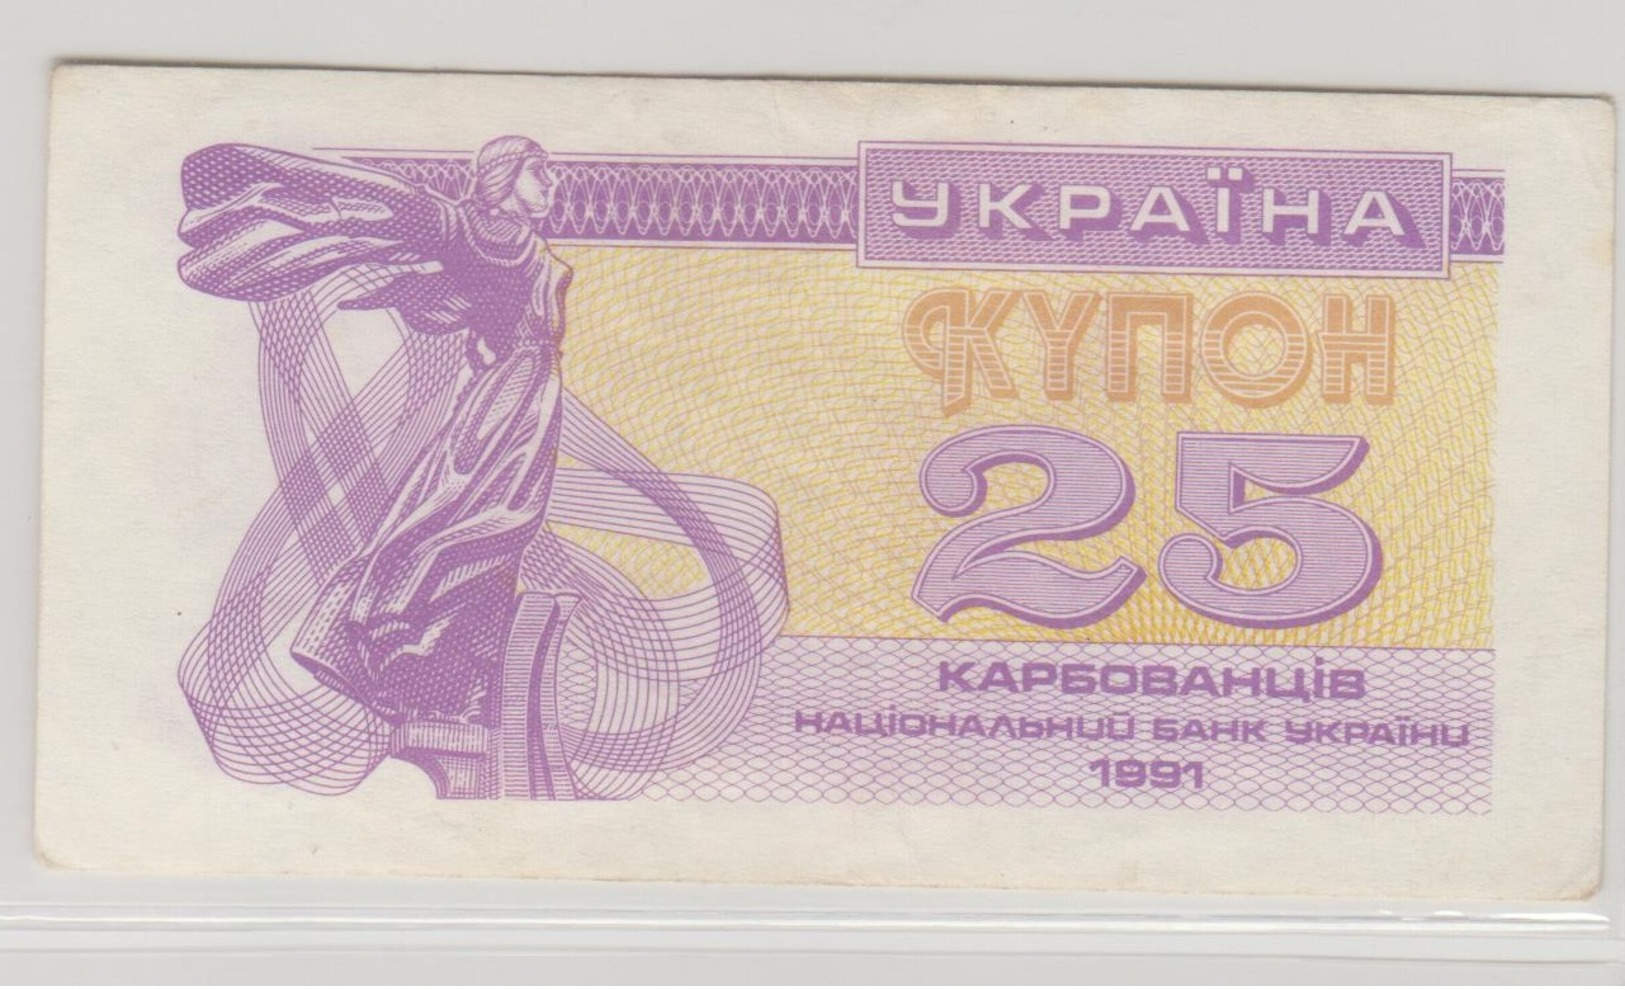 UKRAINE 25 Karbovantsiv 1991 P85a VF+ - Ukraine